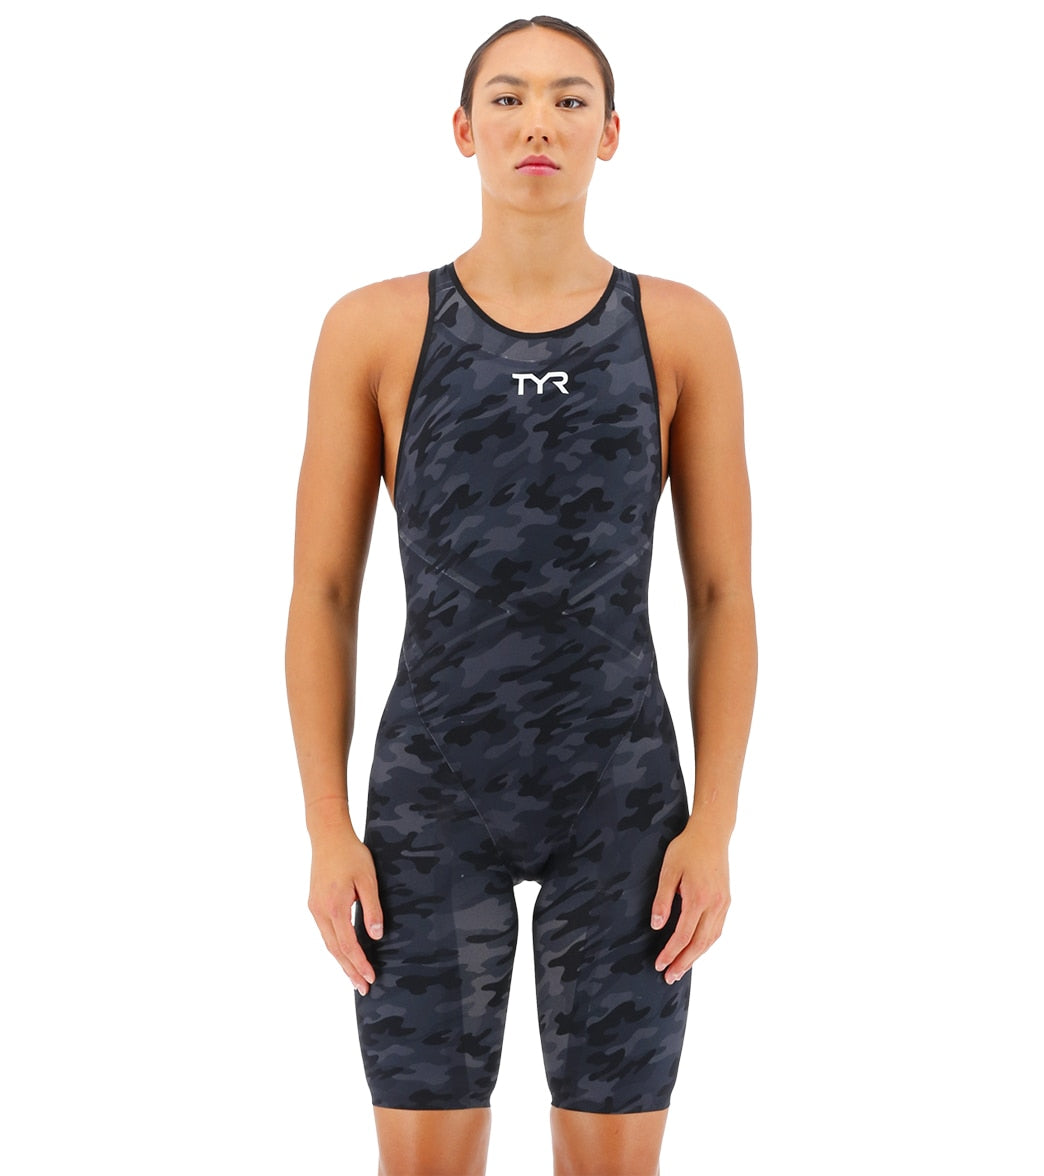 TYR Women's Venzo Camo Open Back Tech Suit Swimsuit at SwimOutlet.com